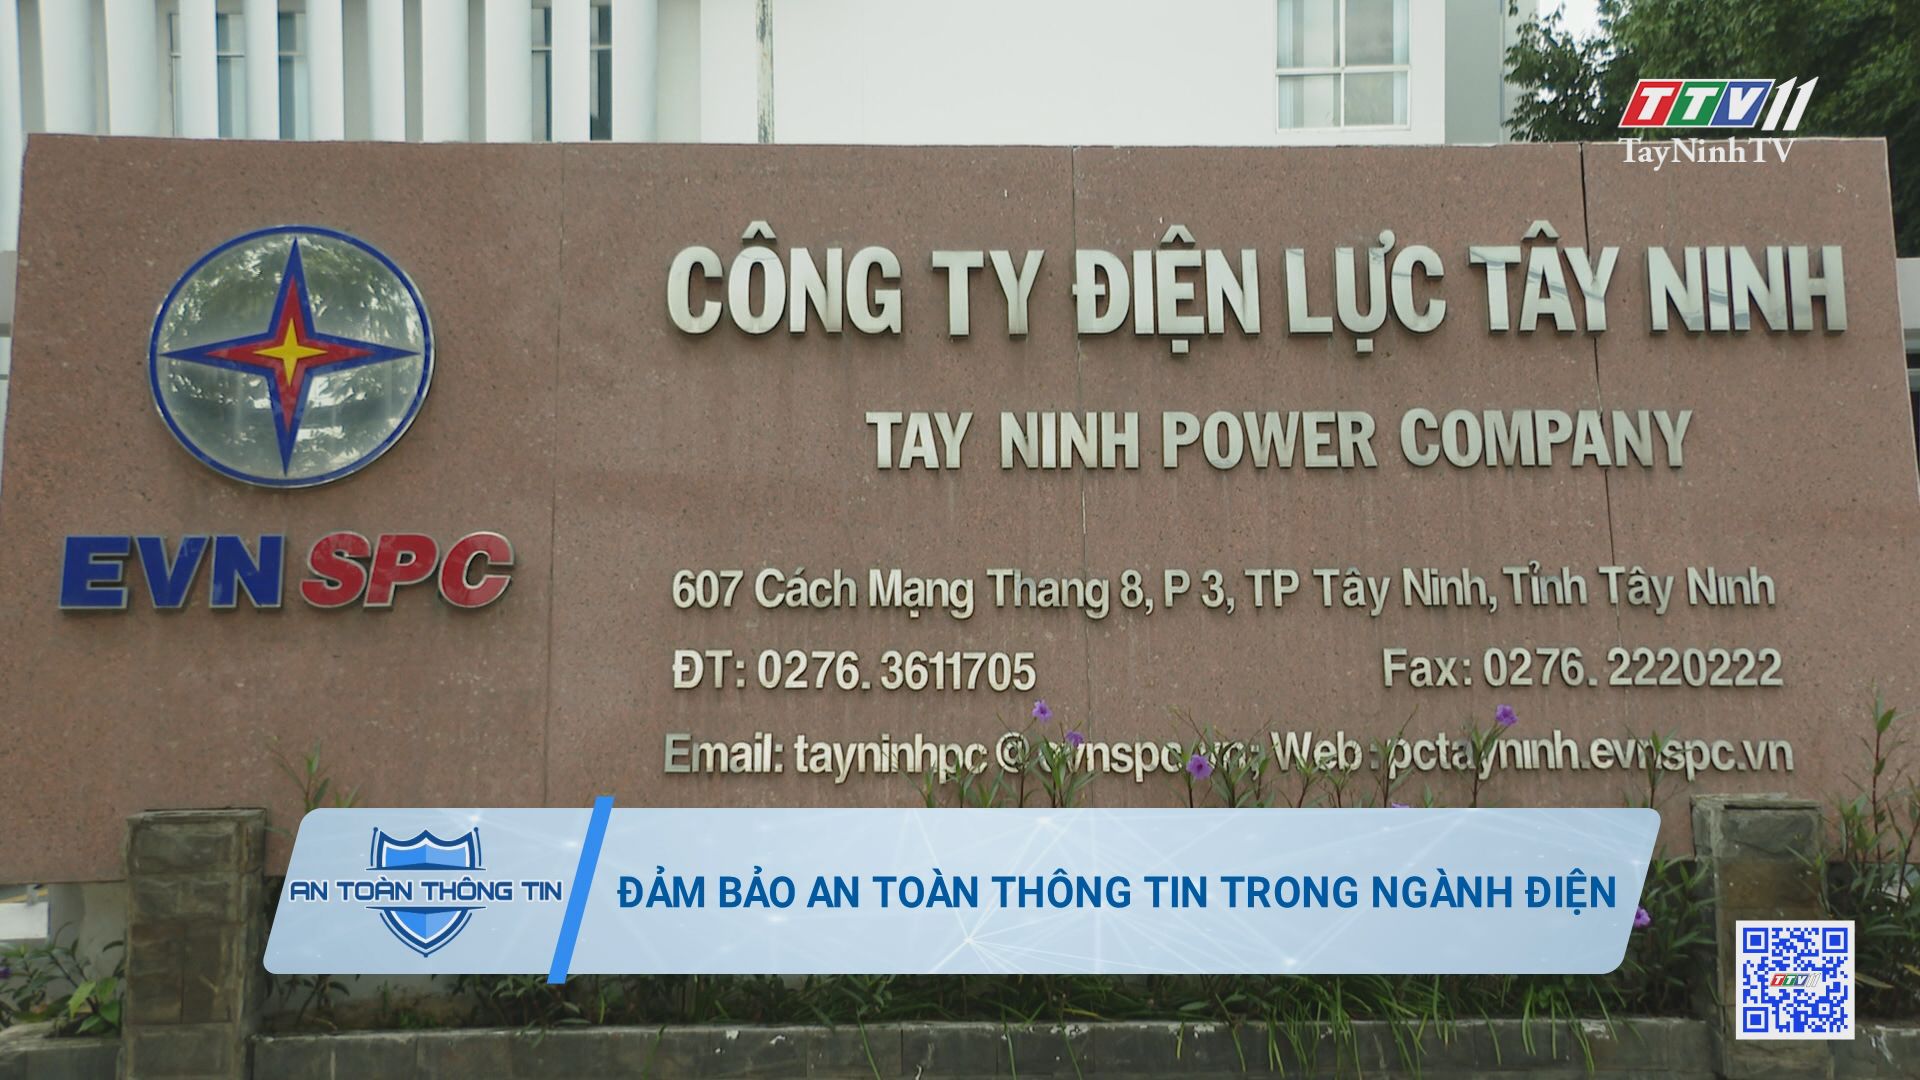 Đảm bảo an toàn thông tin trong ngành Điện | An toàn thông tin | TayNinhTV